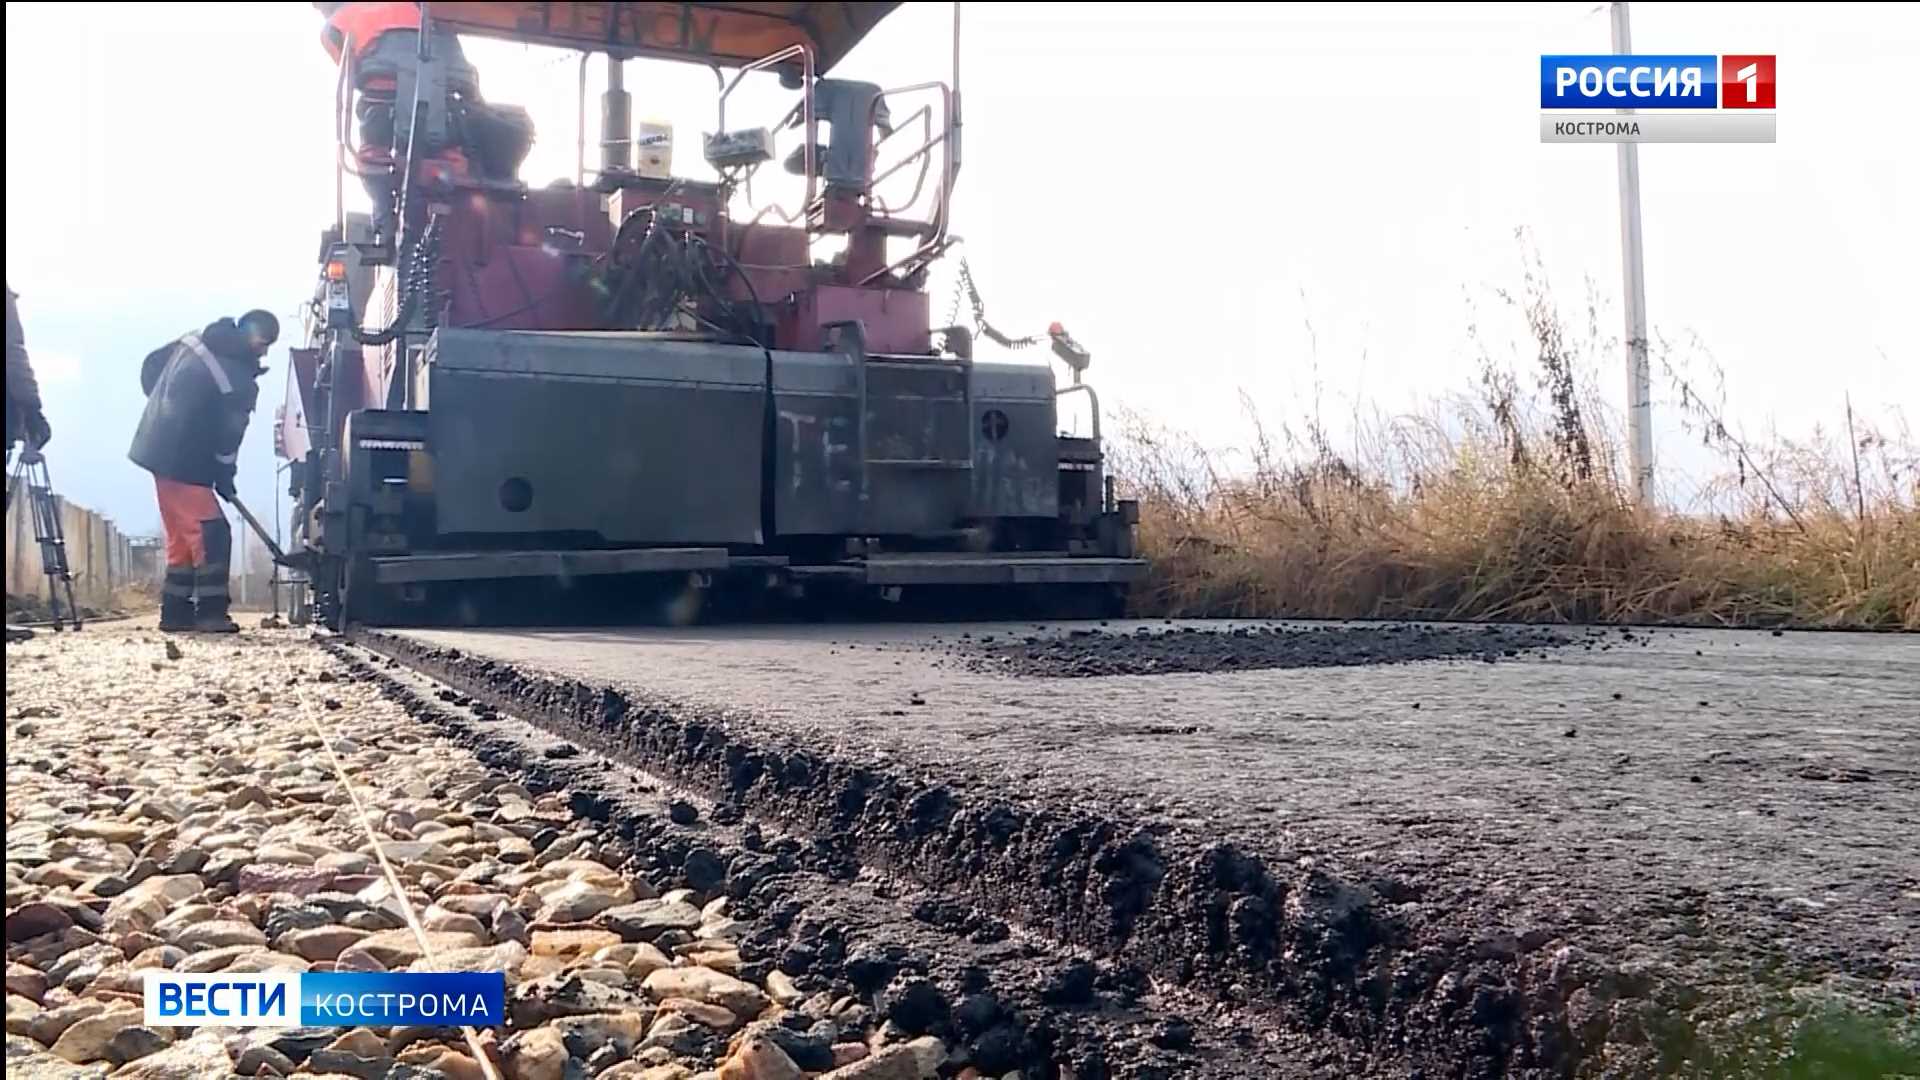 Костромская область получит 3,2 млрд рублей на ремонт дорог